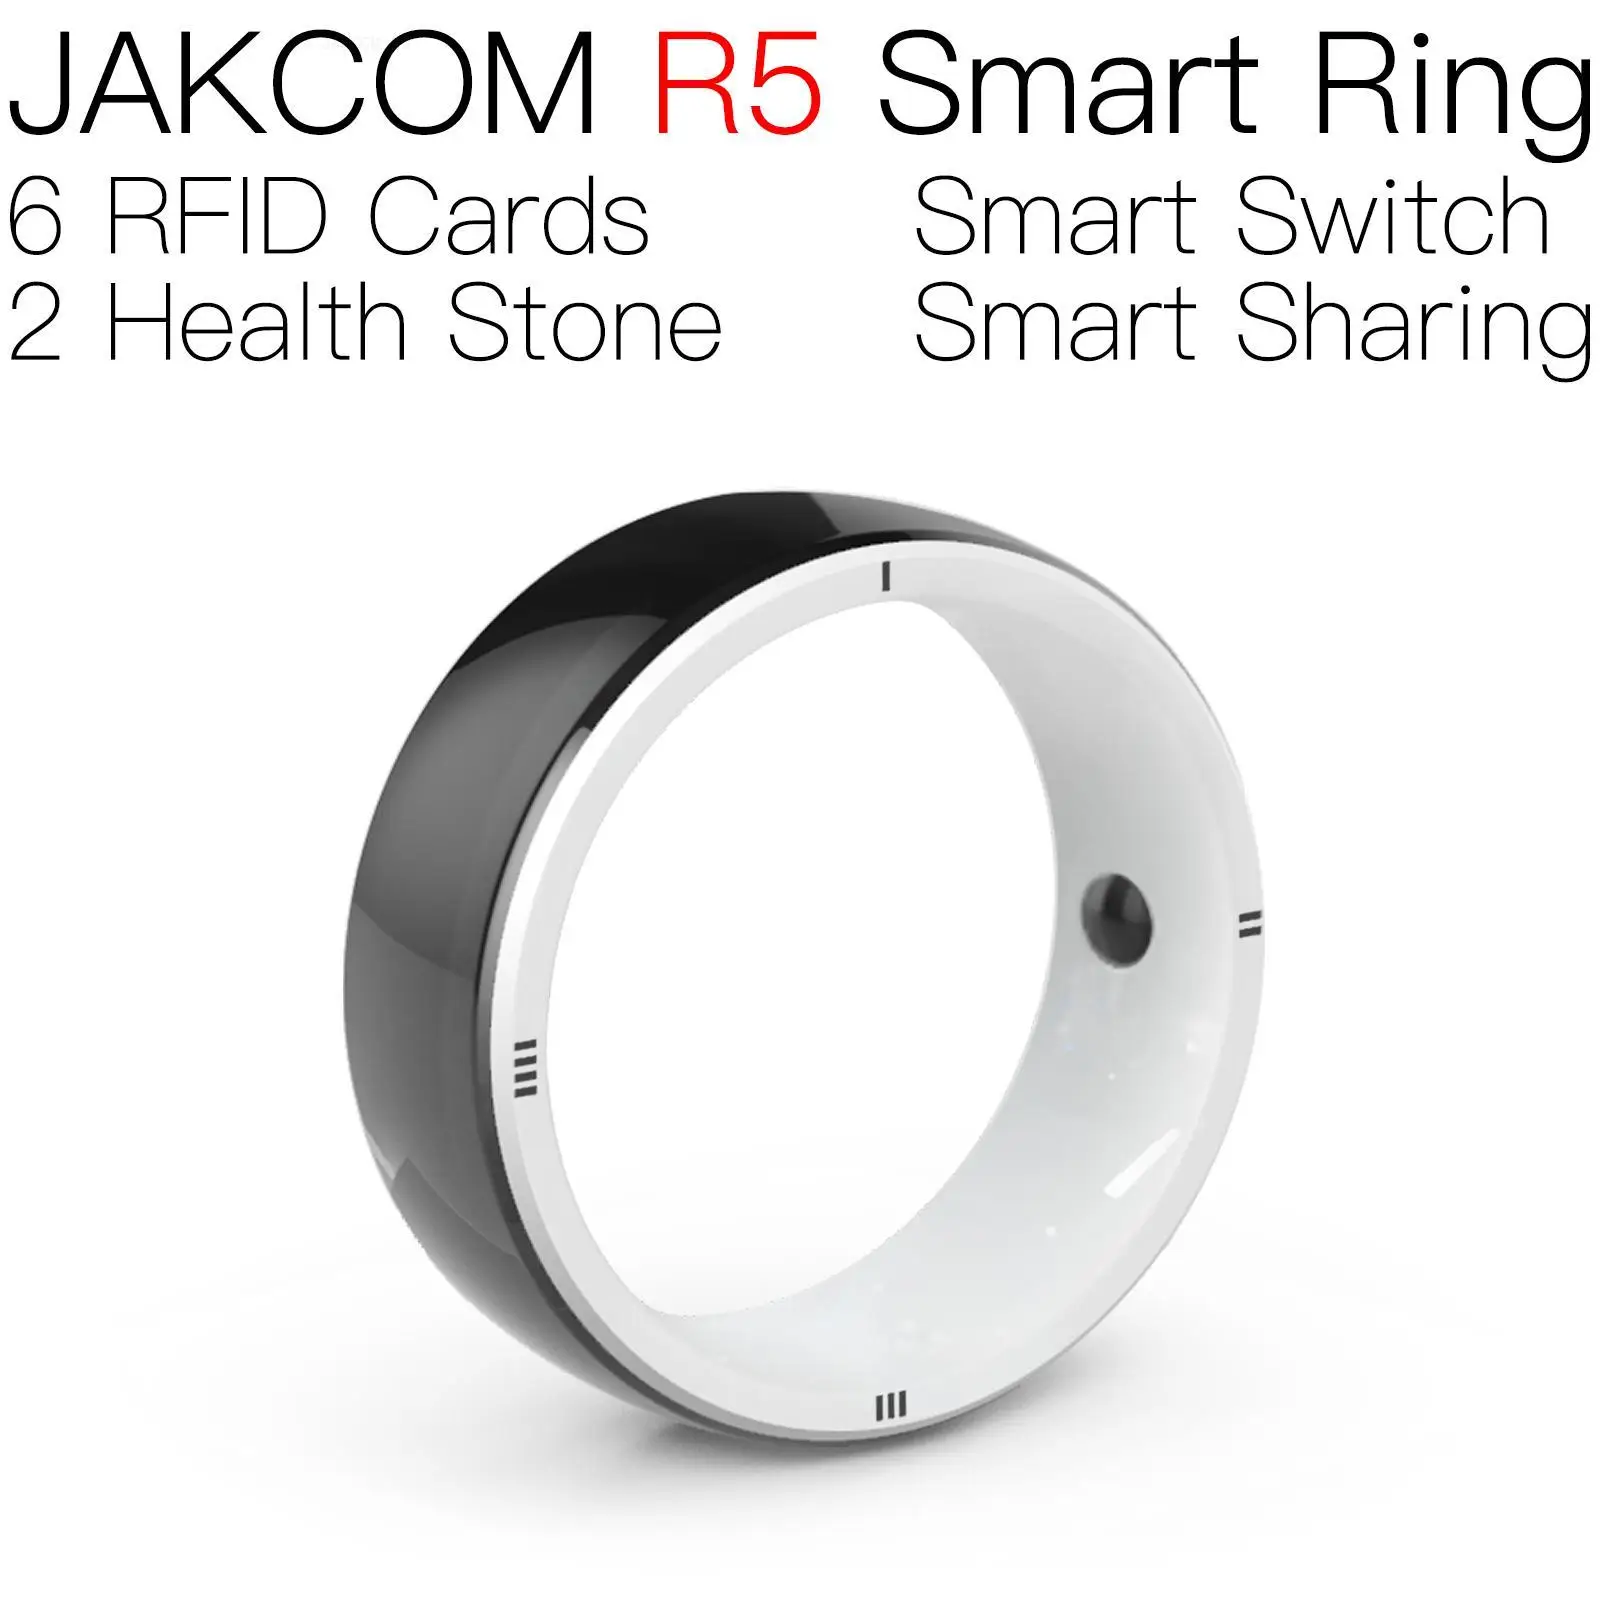 

Умное кольцо JAKCOM R5, подходит к стандартам nfc, дверь 380, влажная Метка rfid mct magic ter banvie 125 кГц, 2-портовый uhf reader